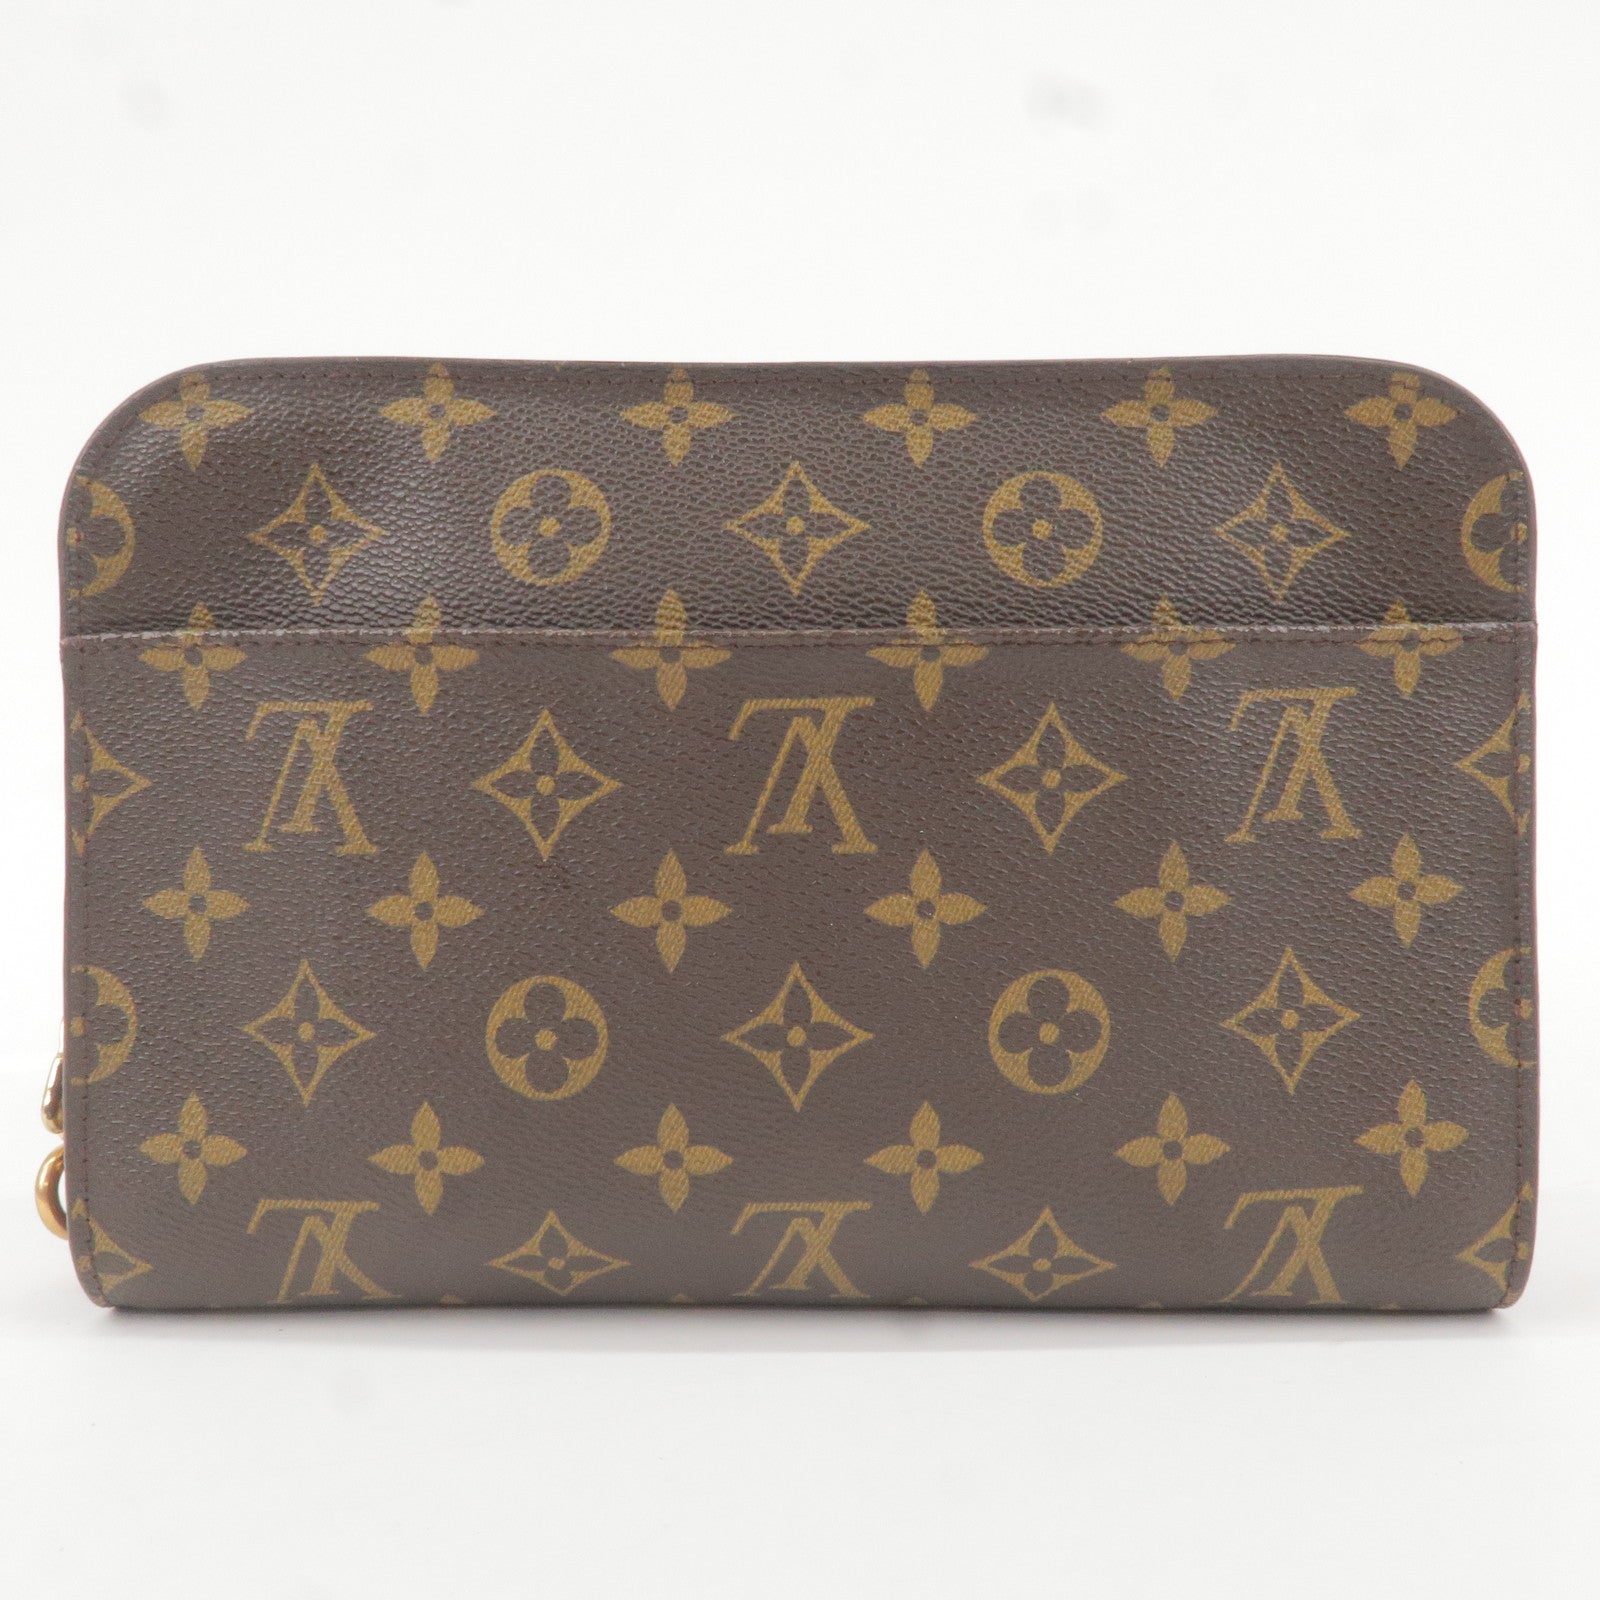 Louis Vuitton Louis Vuitton Orsay Monogram Canvas Clutch Wristlet Bag